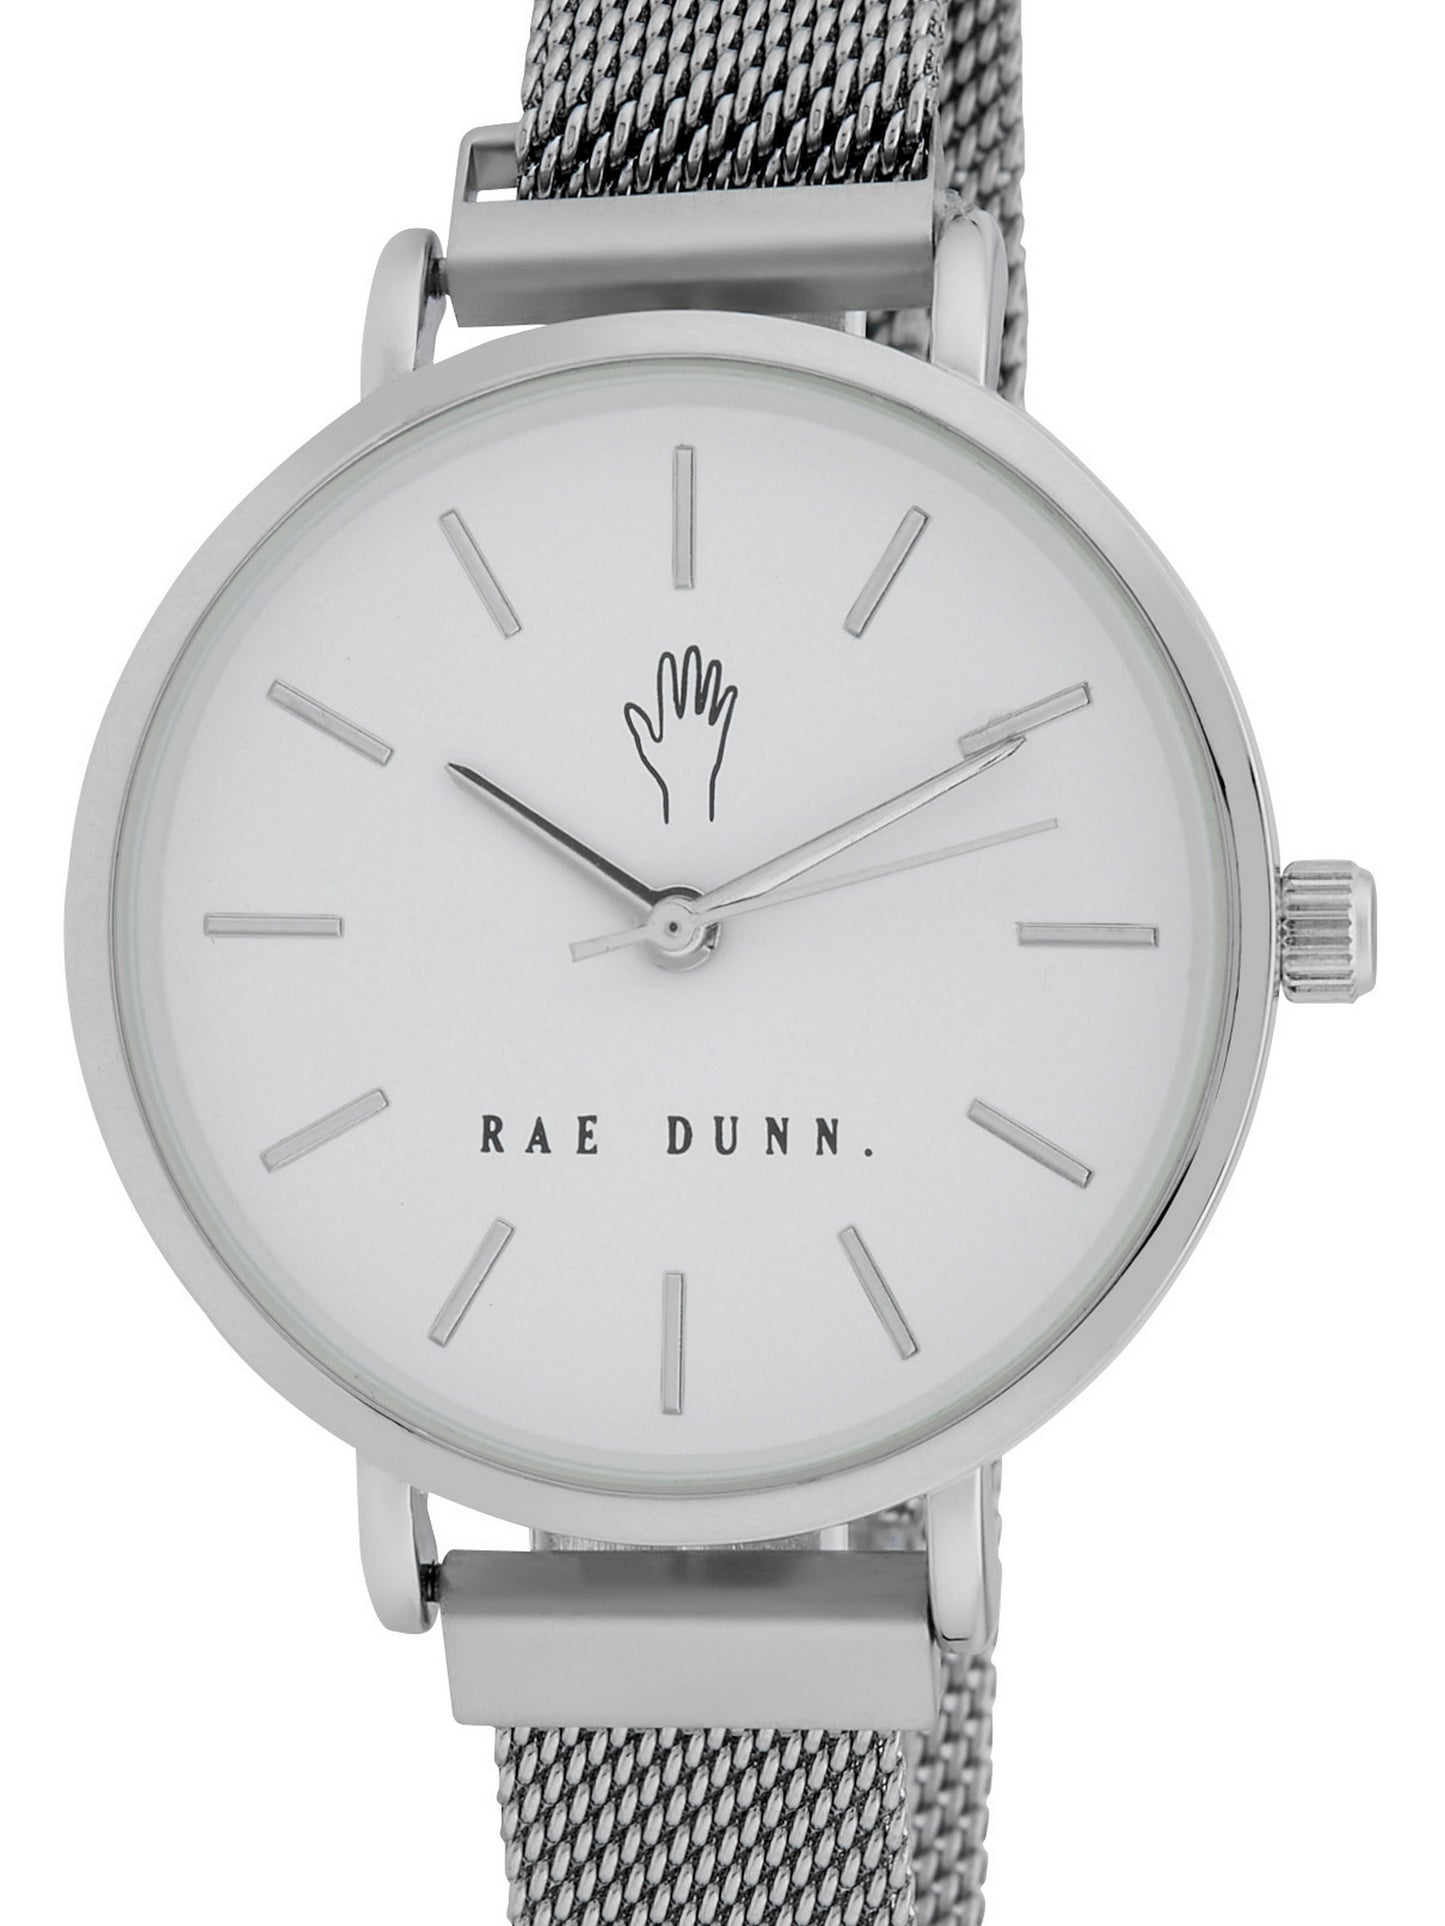 ROBIN Round Face Mesh Bracelet Watch in Silver, 33mm - Rae Dunn Wear - Watch